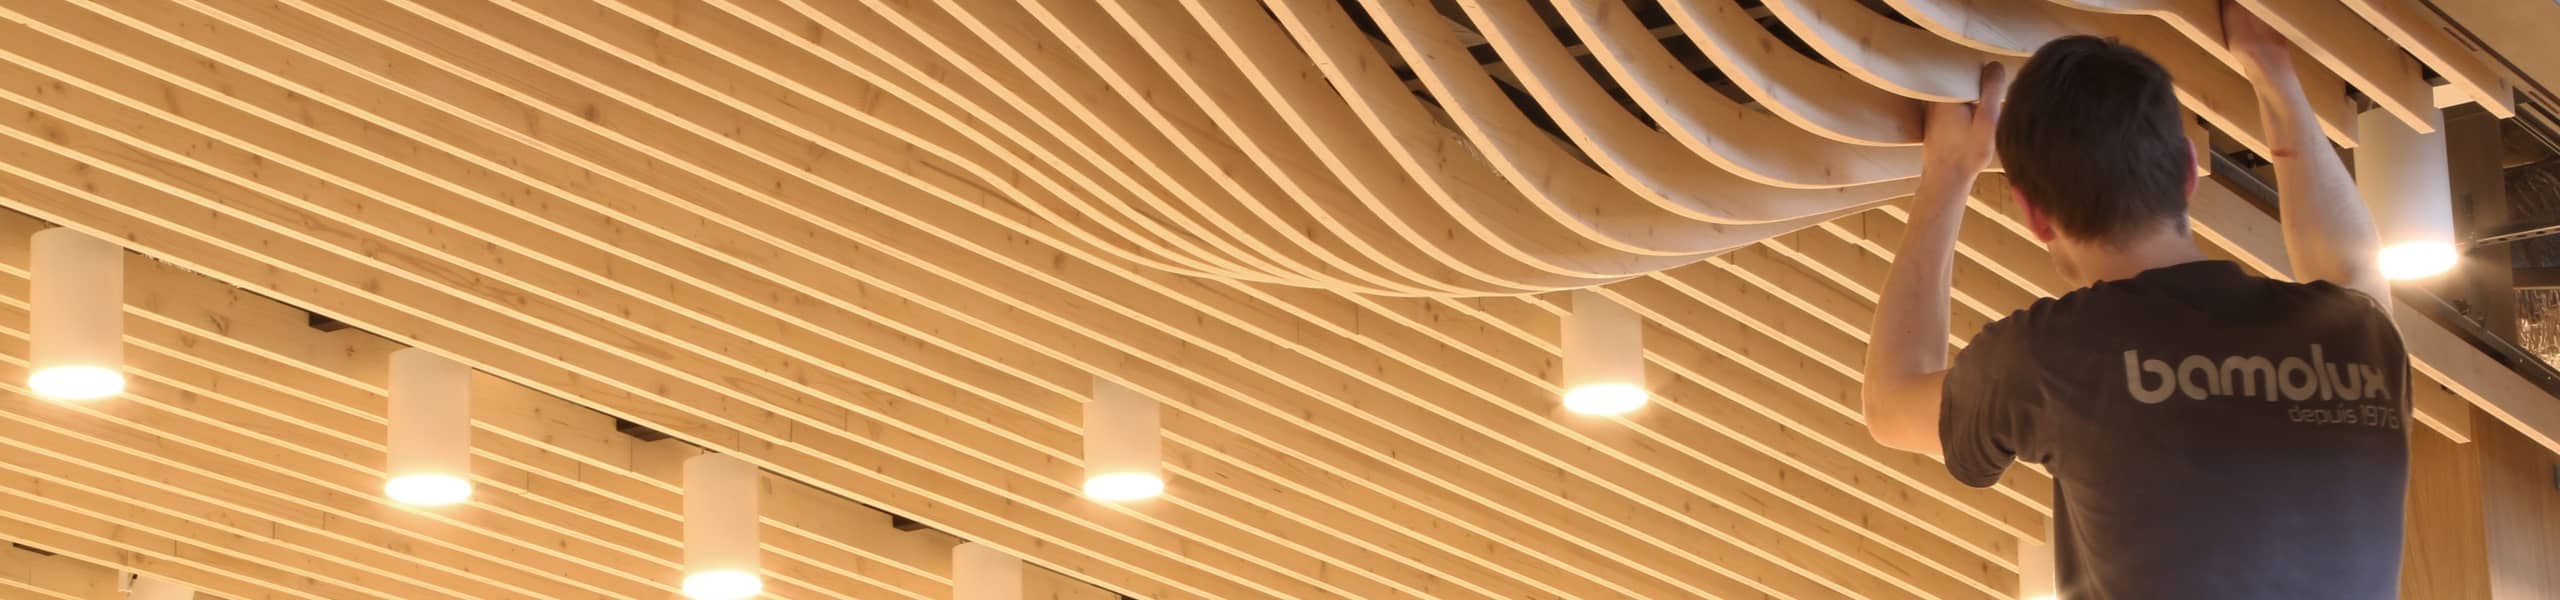 Poseur Bamolux qui installe un plafond suspendu en lames de bois clair avec formes de bulle à certain endroit et spots intégrés.